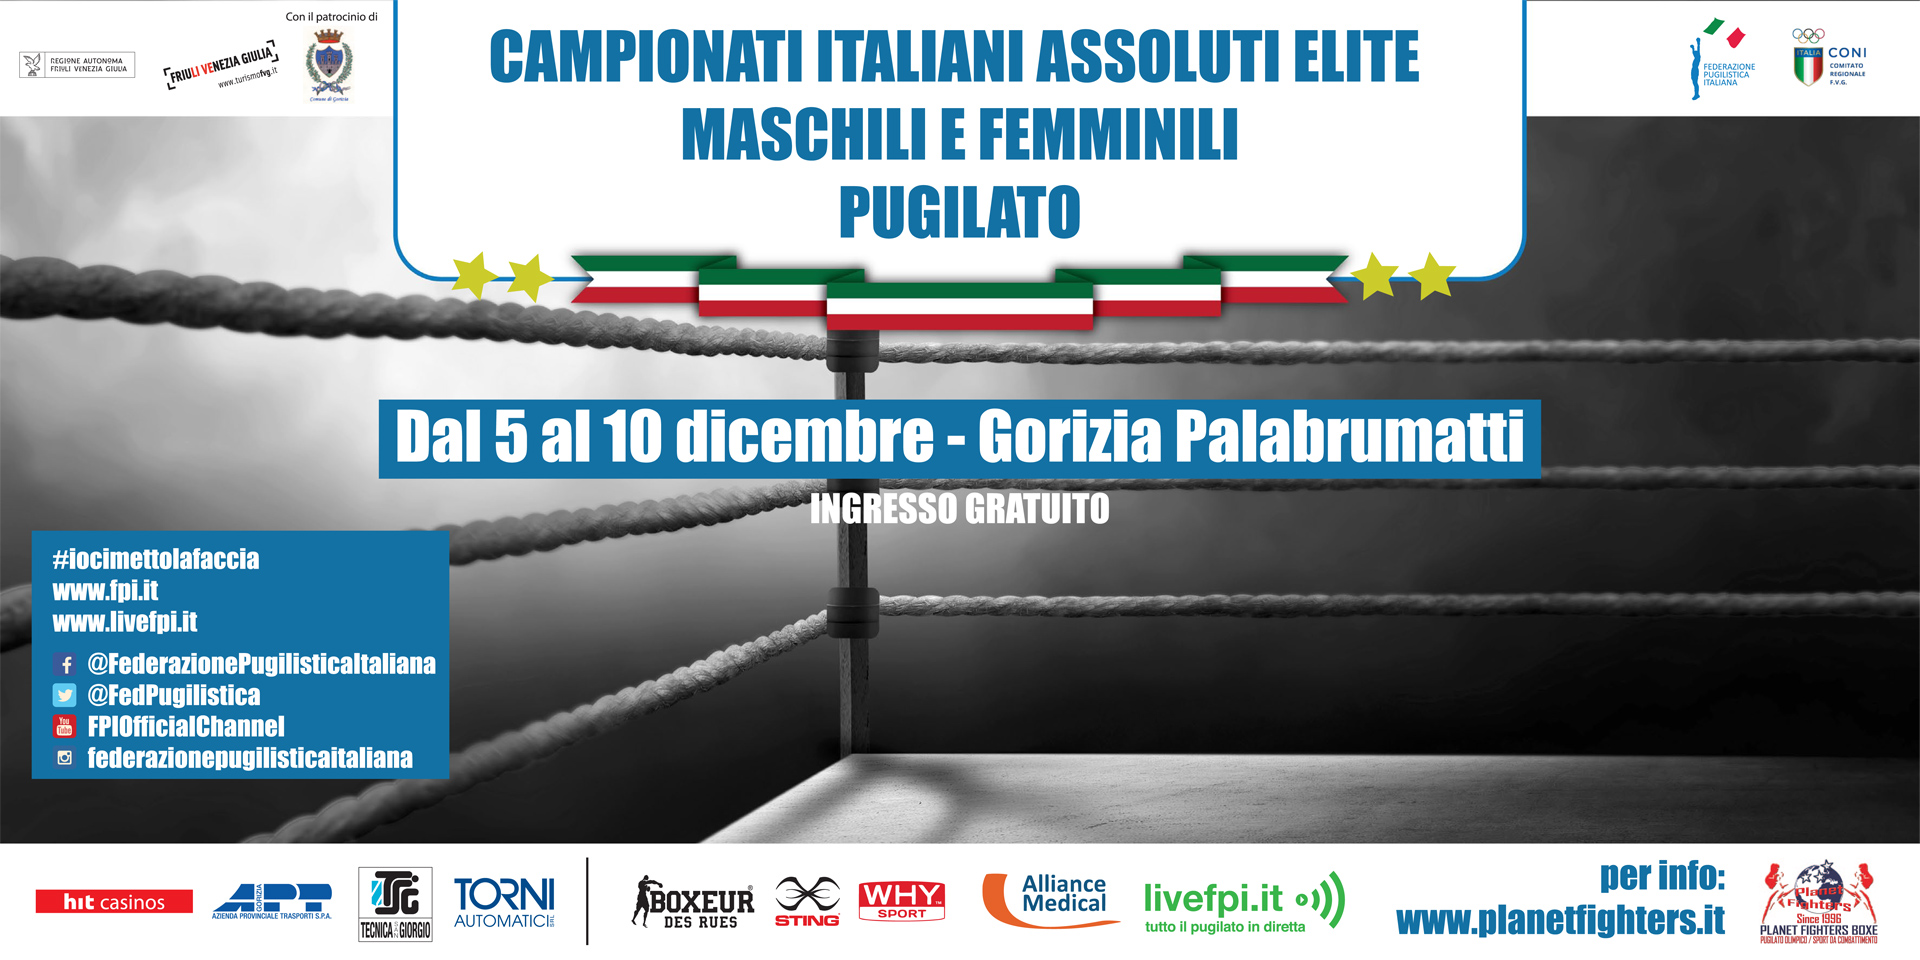 Assoluti 2017 Maschili e Femminili Gorizia 5-10 dicembre: La Locandina Ufficiale #Assoluti2017